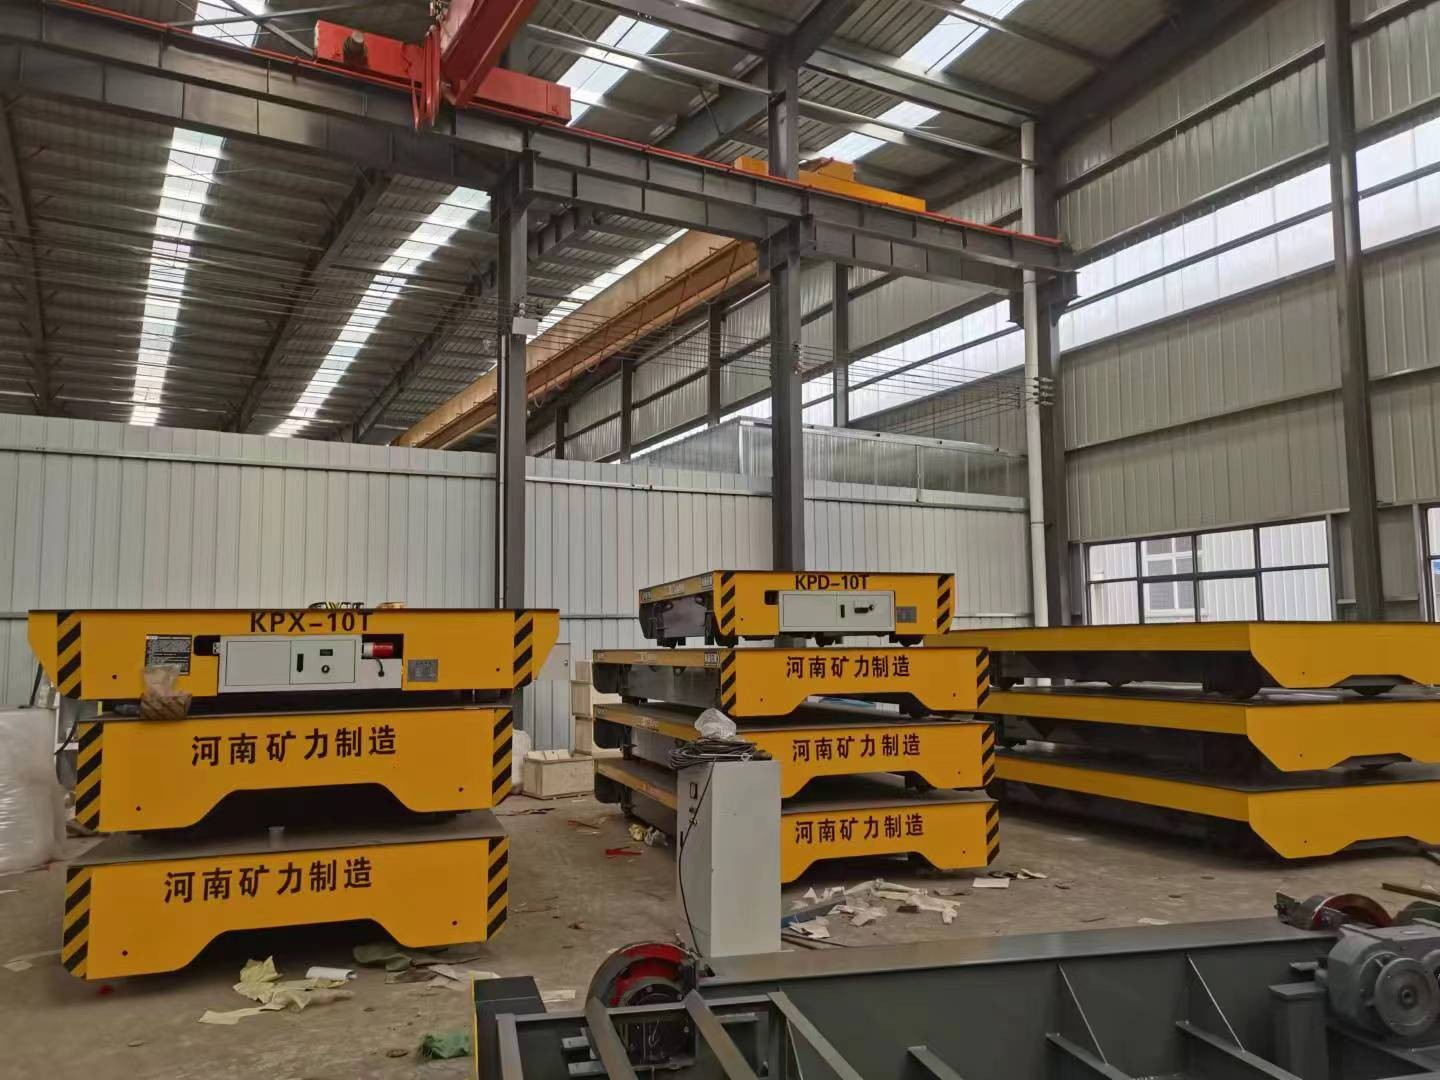 河南矿力电动平车专业生产河南省矿力建筑工程有限公司